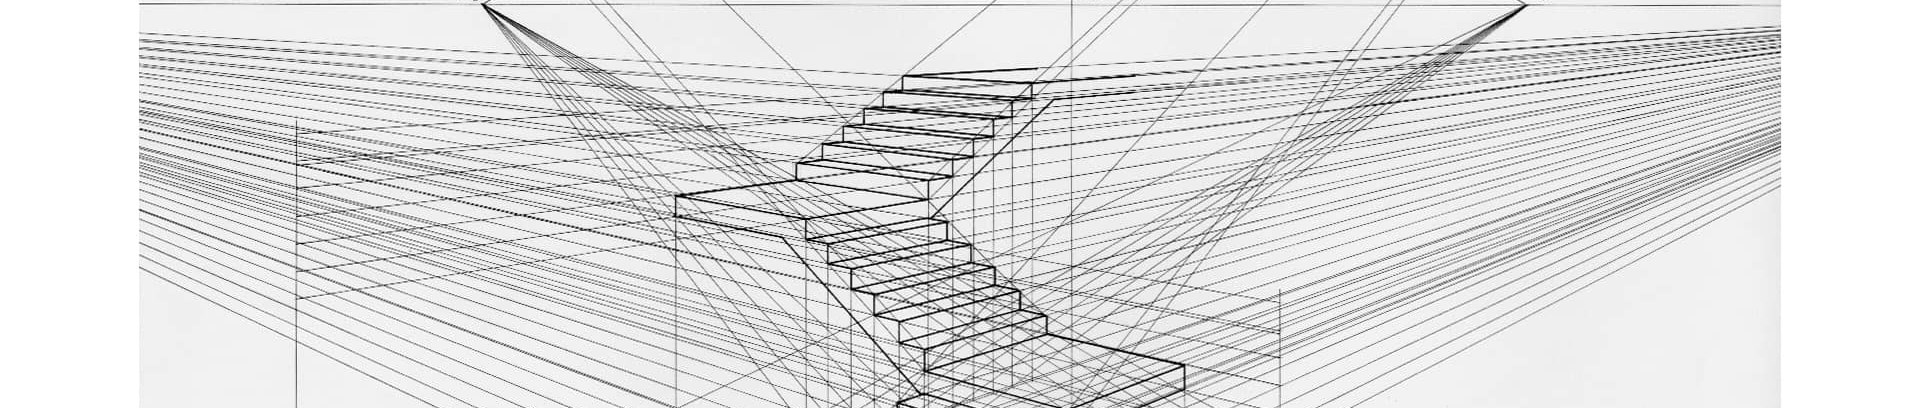 Perspektivtegning af en trappe | Tegnekursus i FOF Aarhus